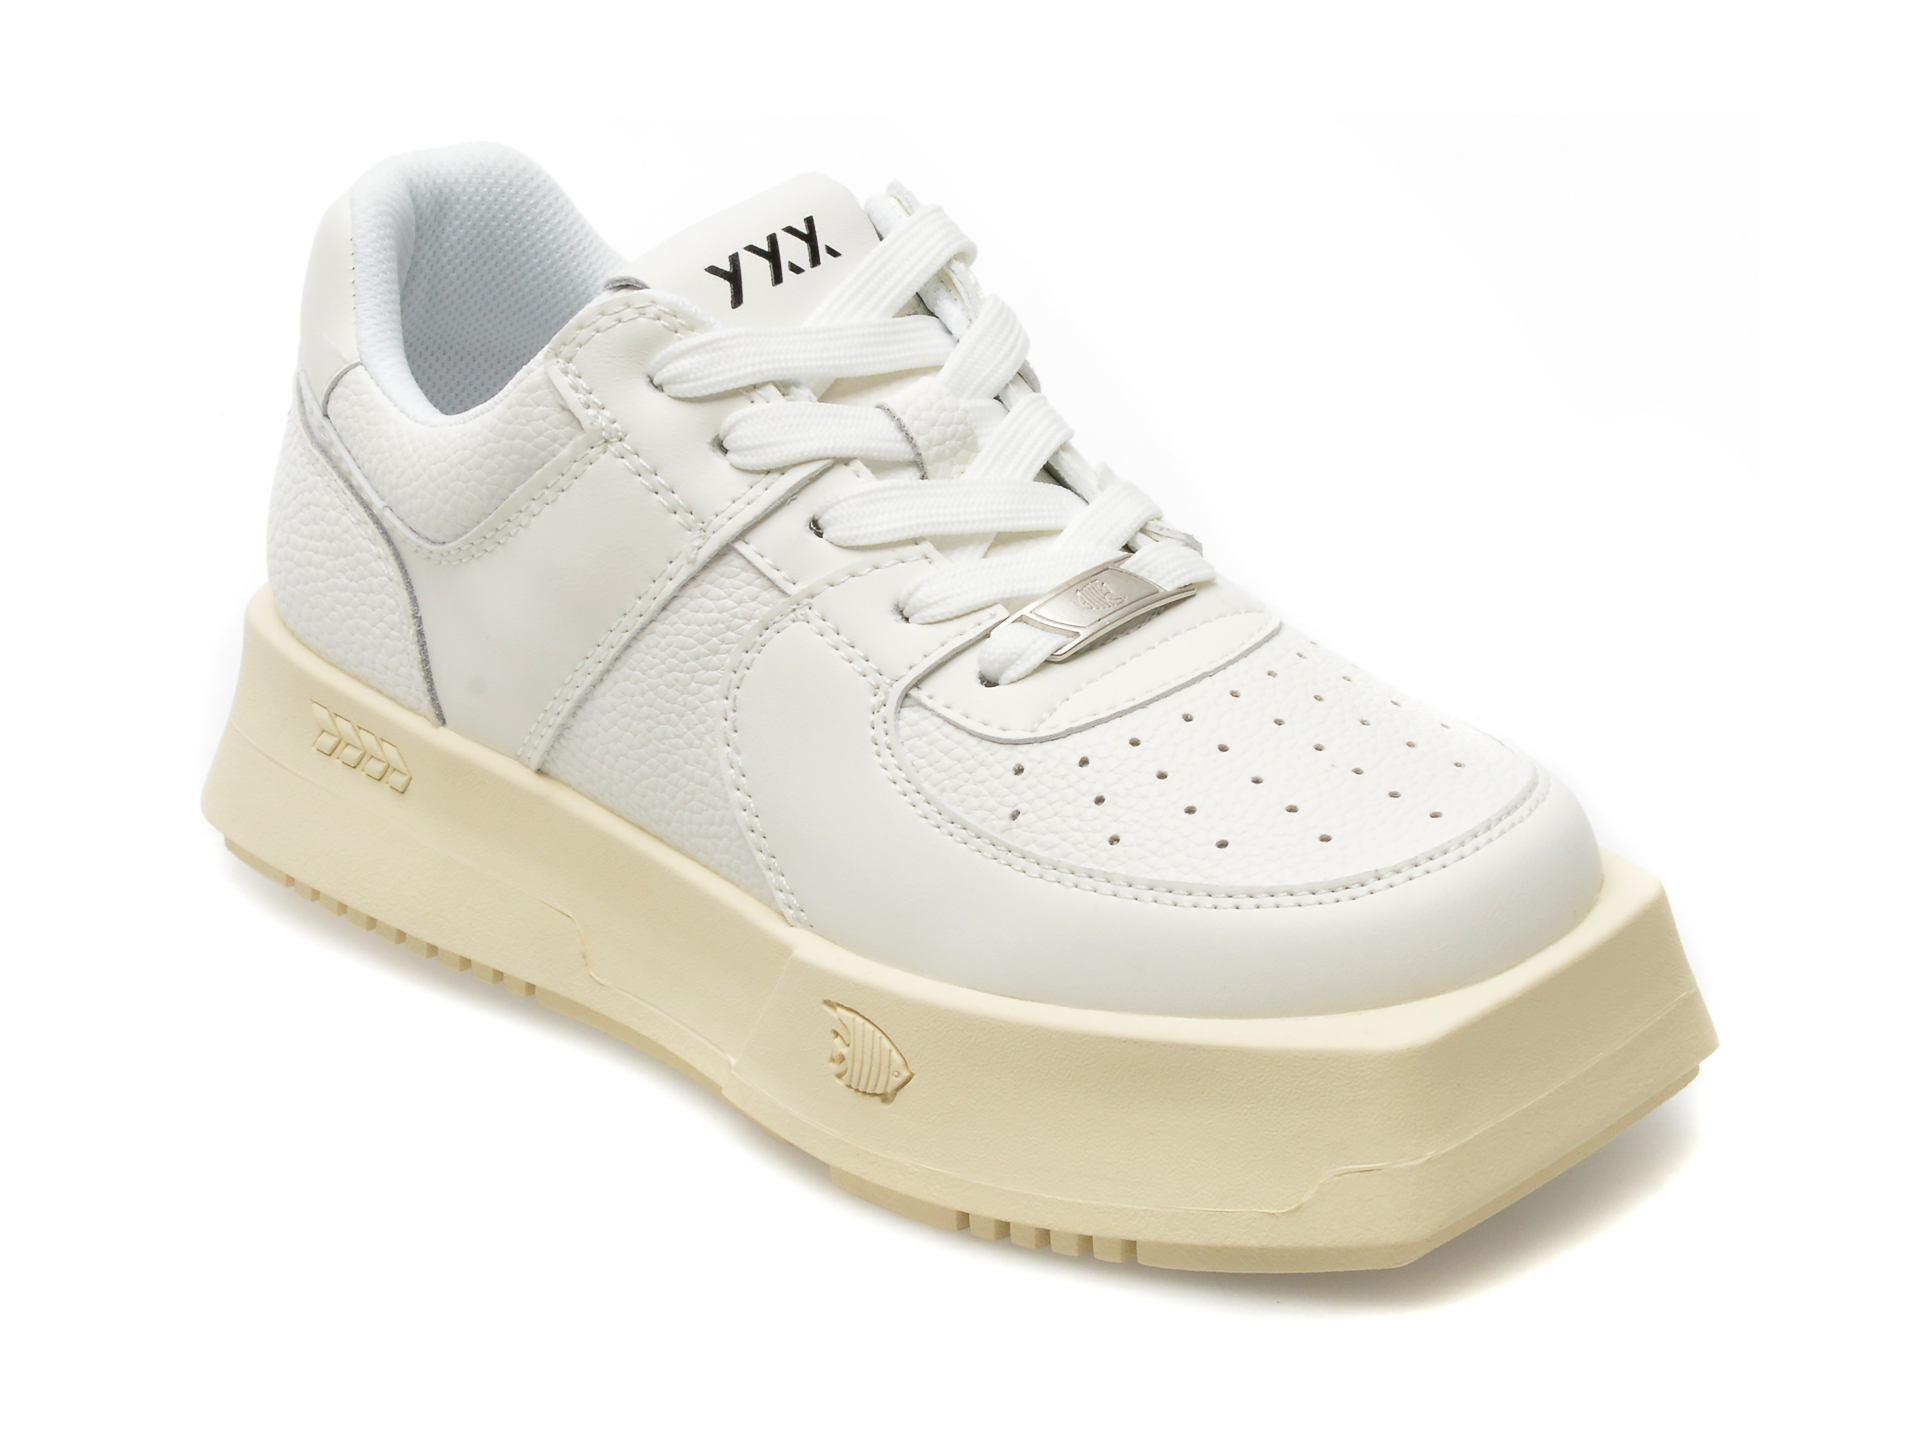 Pantofi GRYXX albi, 8205, din piele naturala